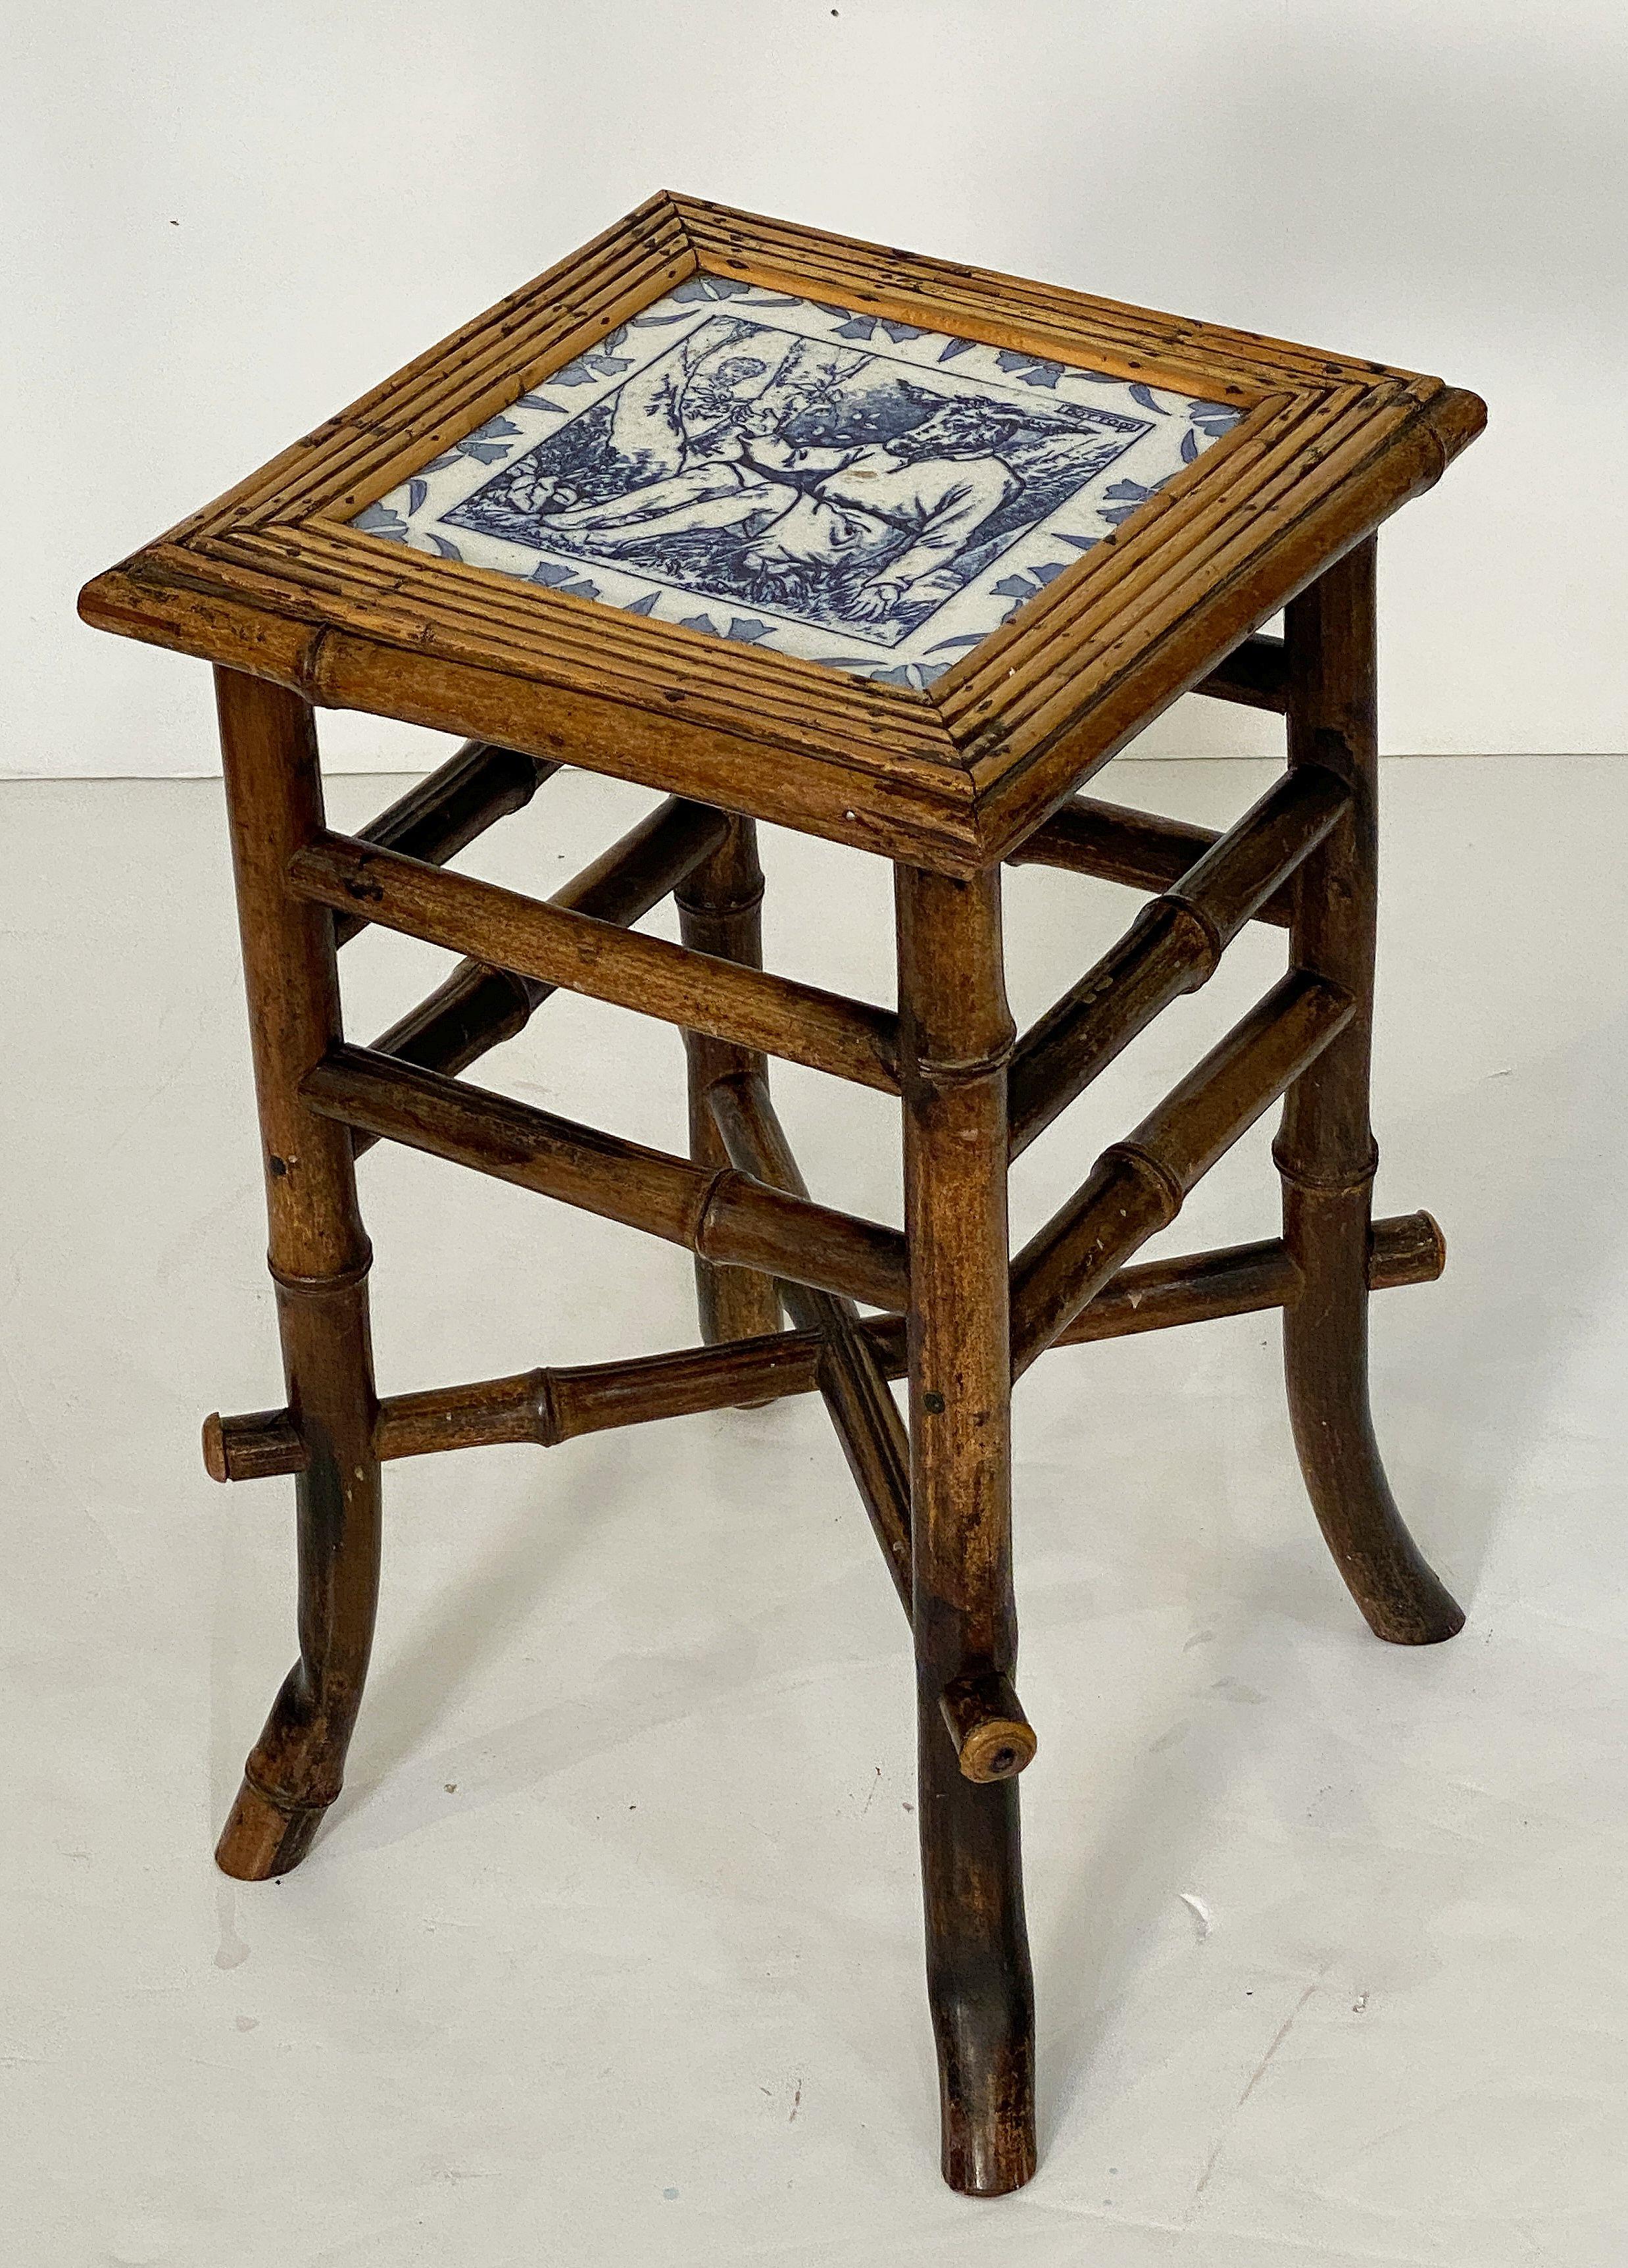 Table ou tabouret en bambou anglais de la période du Mouvement esthétique de la fin du XIXe siècle,  avec une belle finition patinée et une assise carrée en bambou avec un carreau de céramique bleu et blanc de Wedgwood représentant l'âne Nick